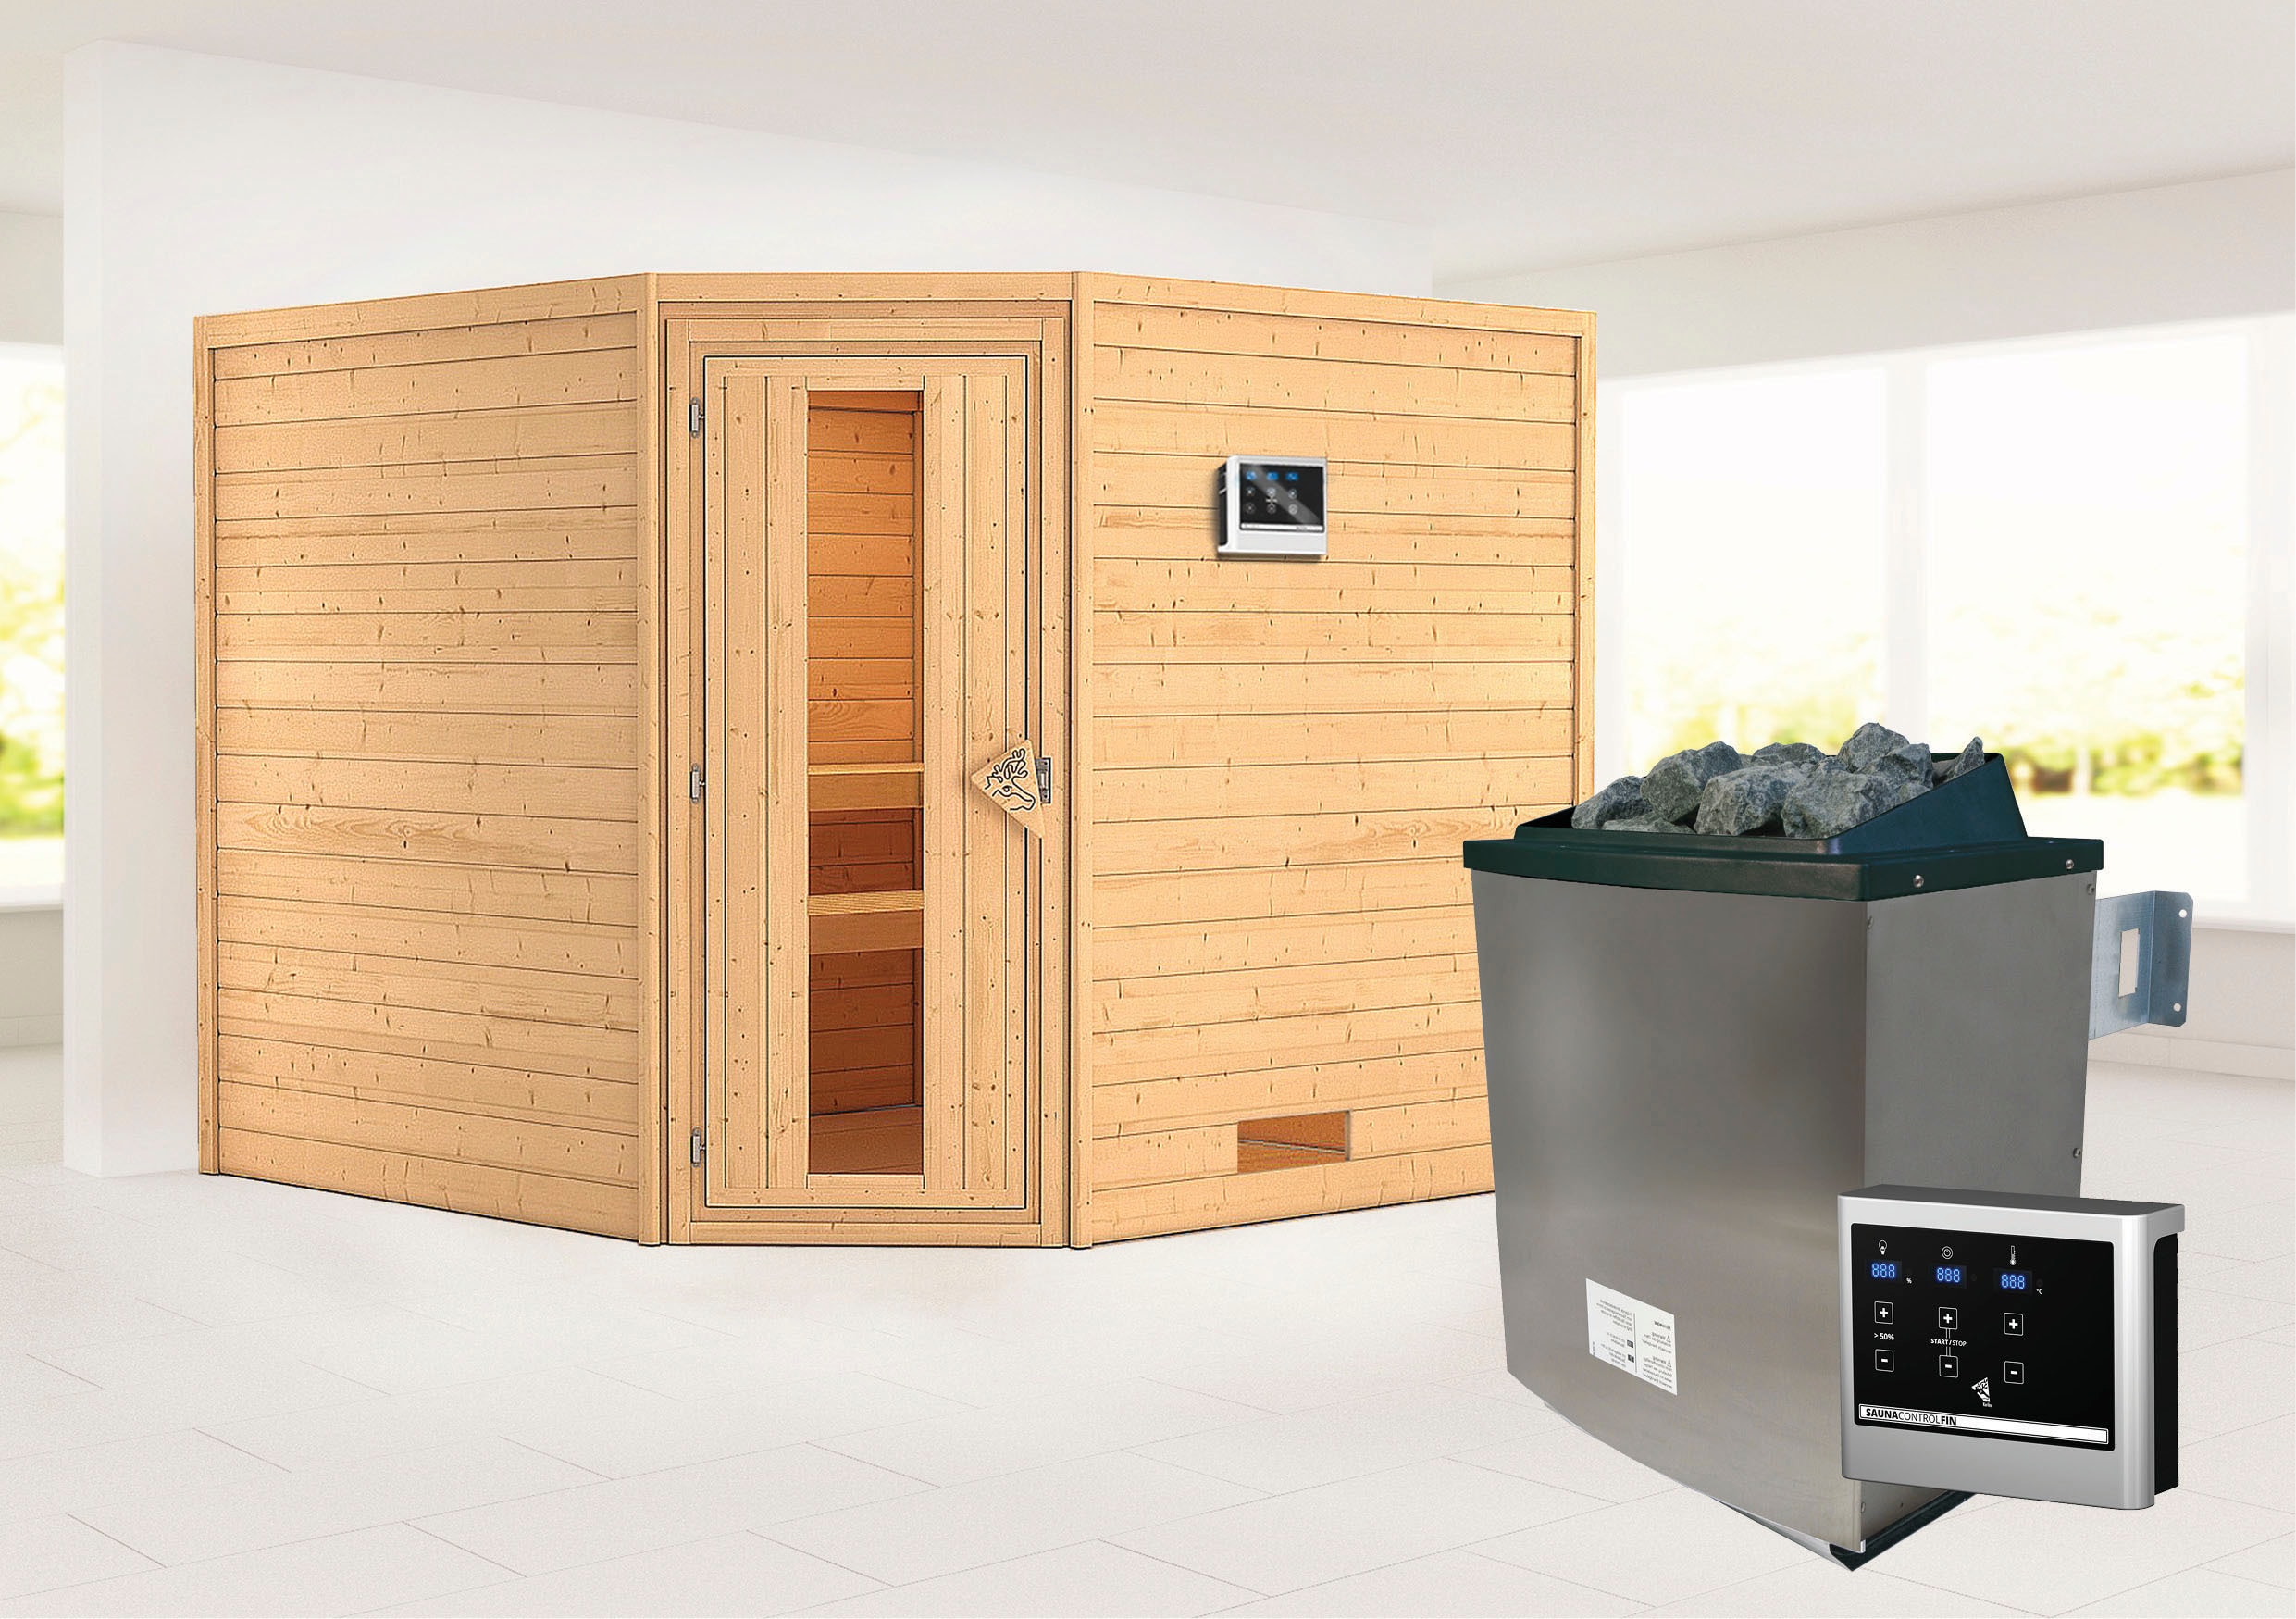 Karibu Sauna ""Leona" mit Energiespartür Ofen 9 KW externe Strg modern"